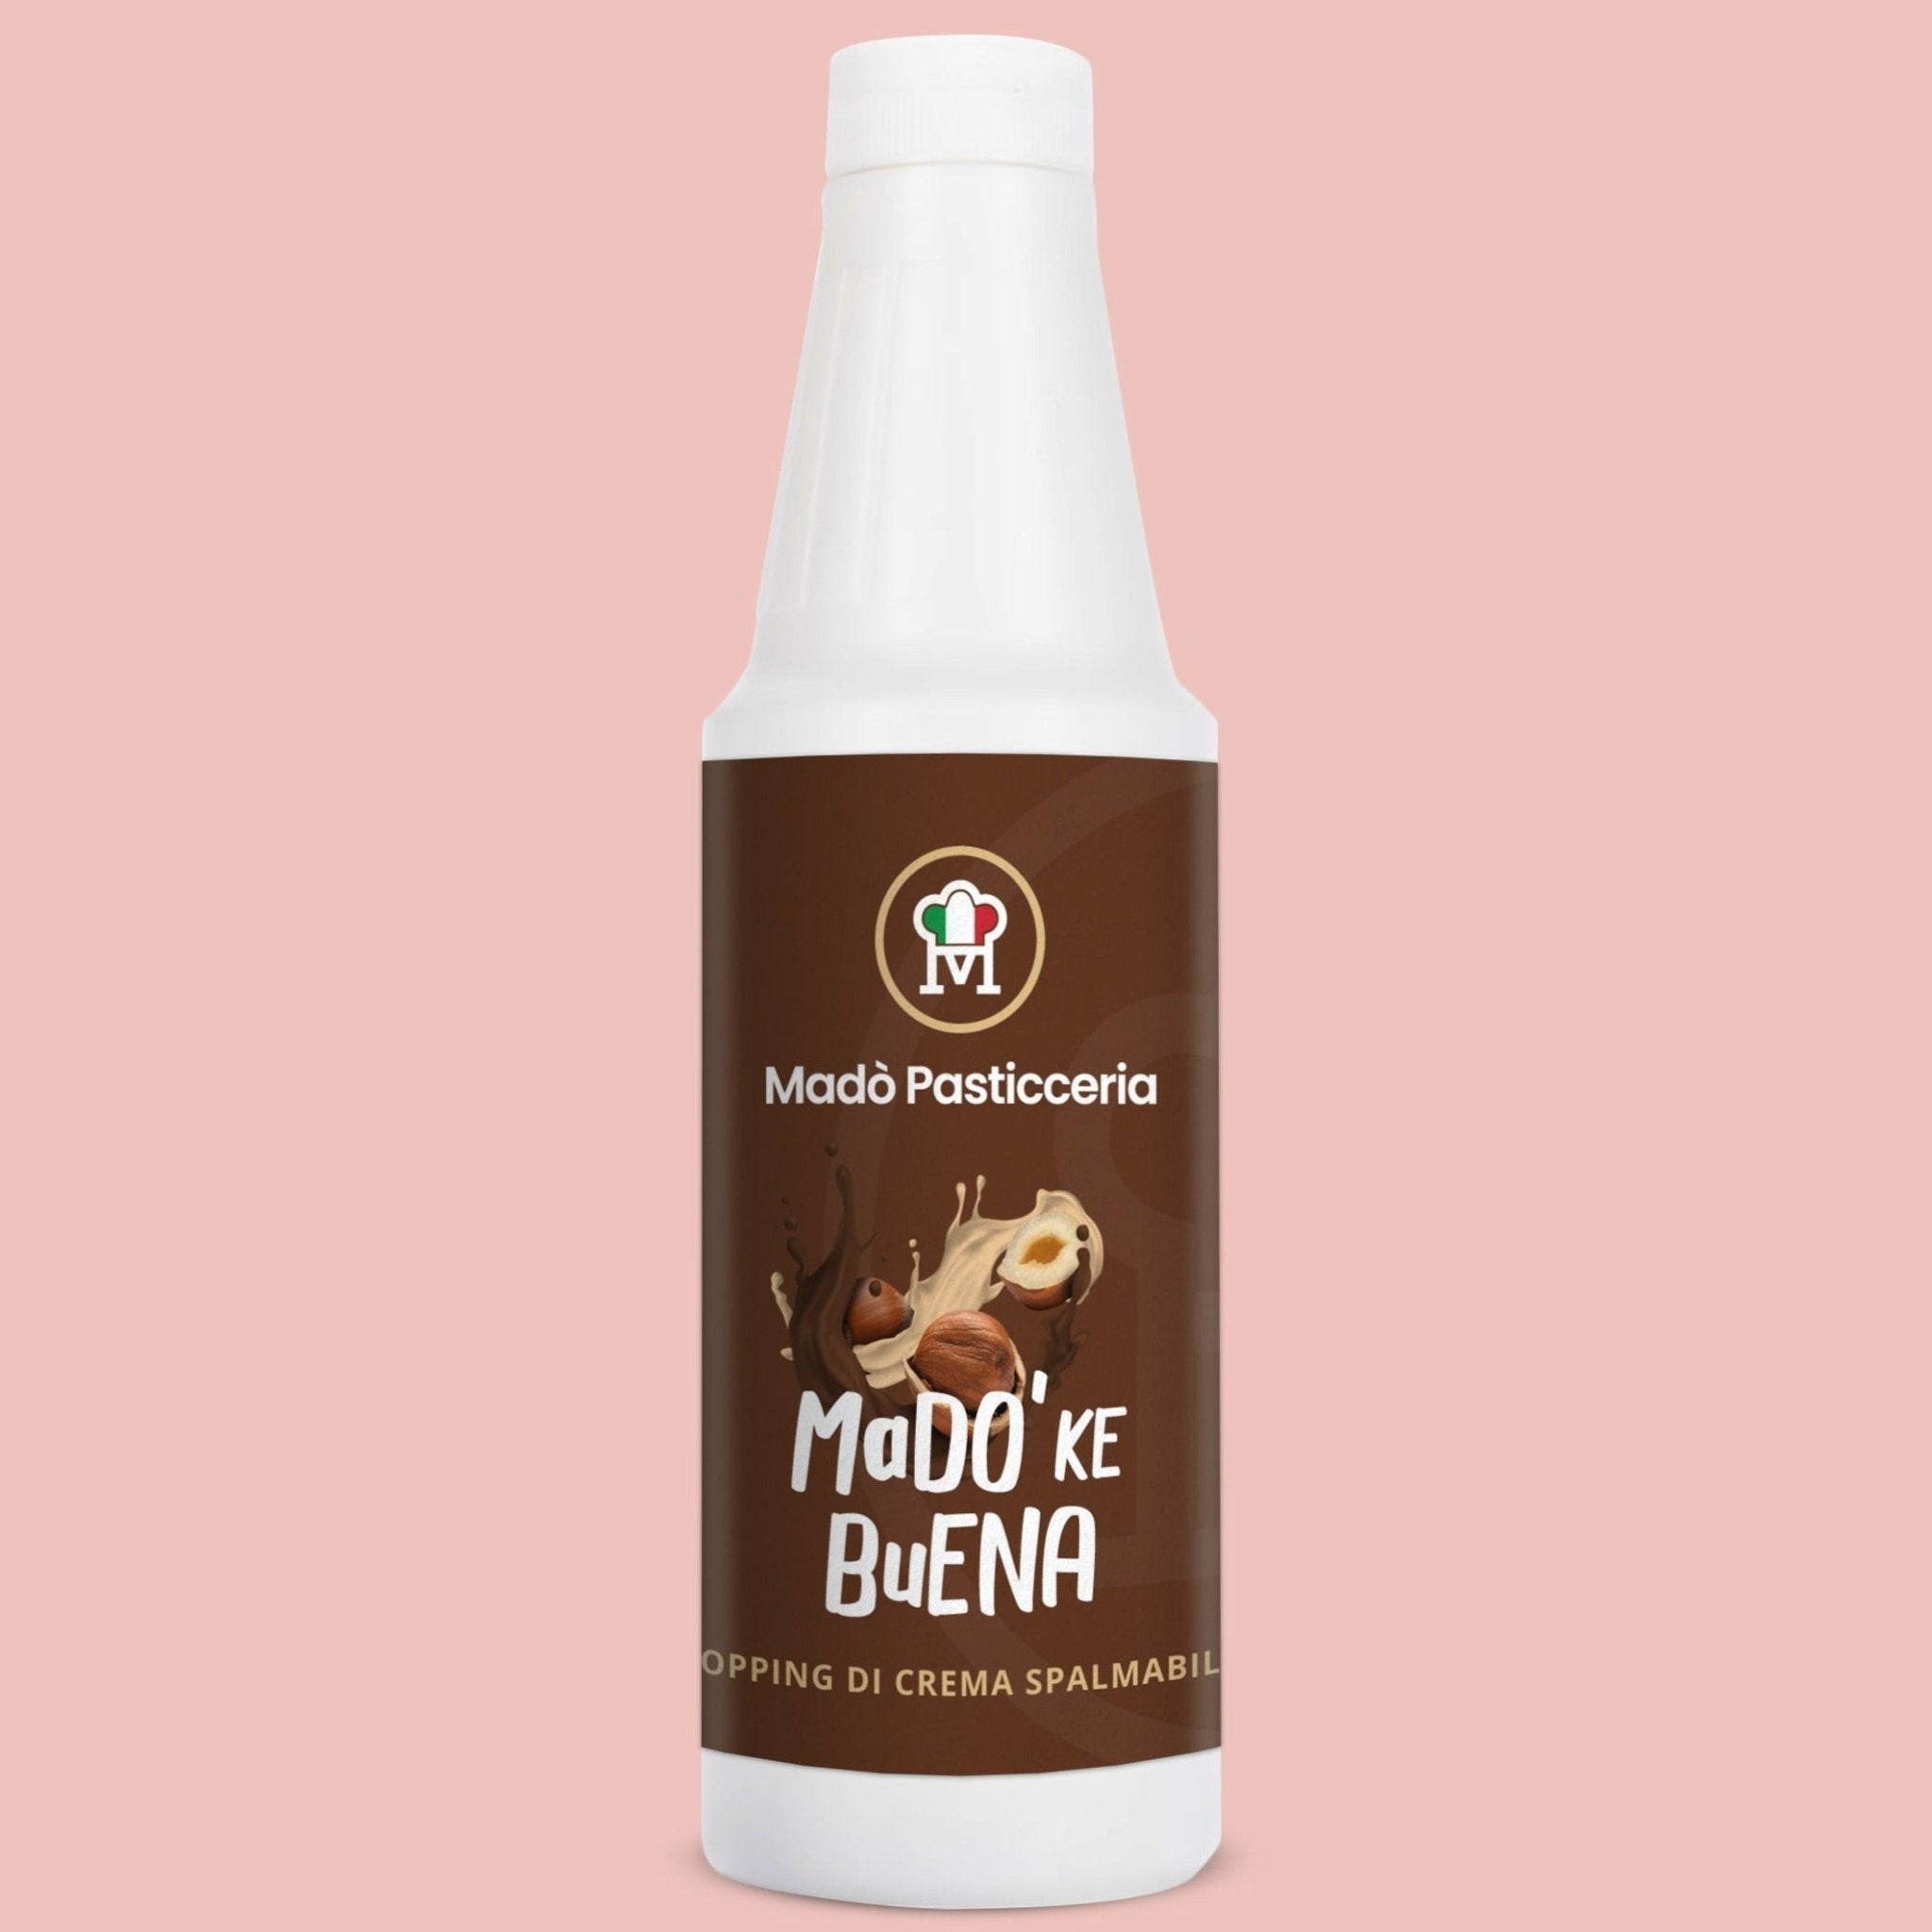 Topping di crema spalmabile "Madò ke buena" - Madò Pasticceria